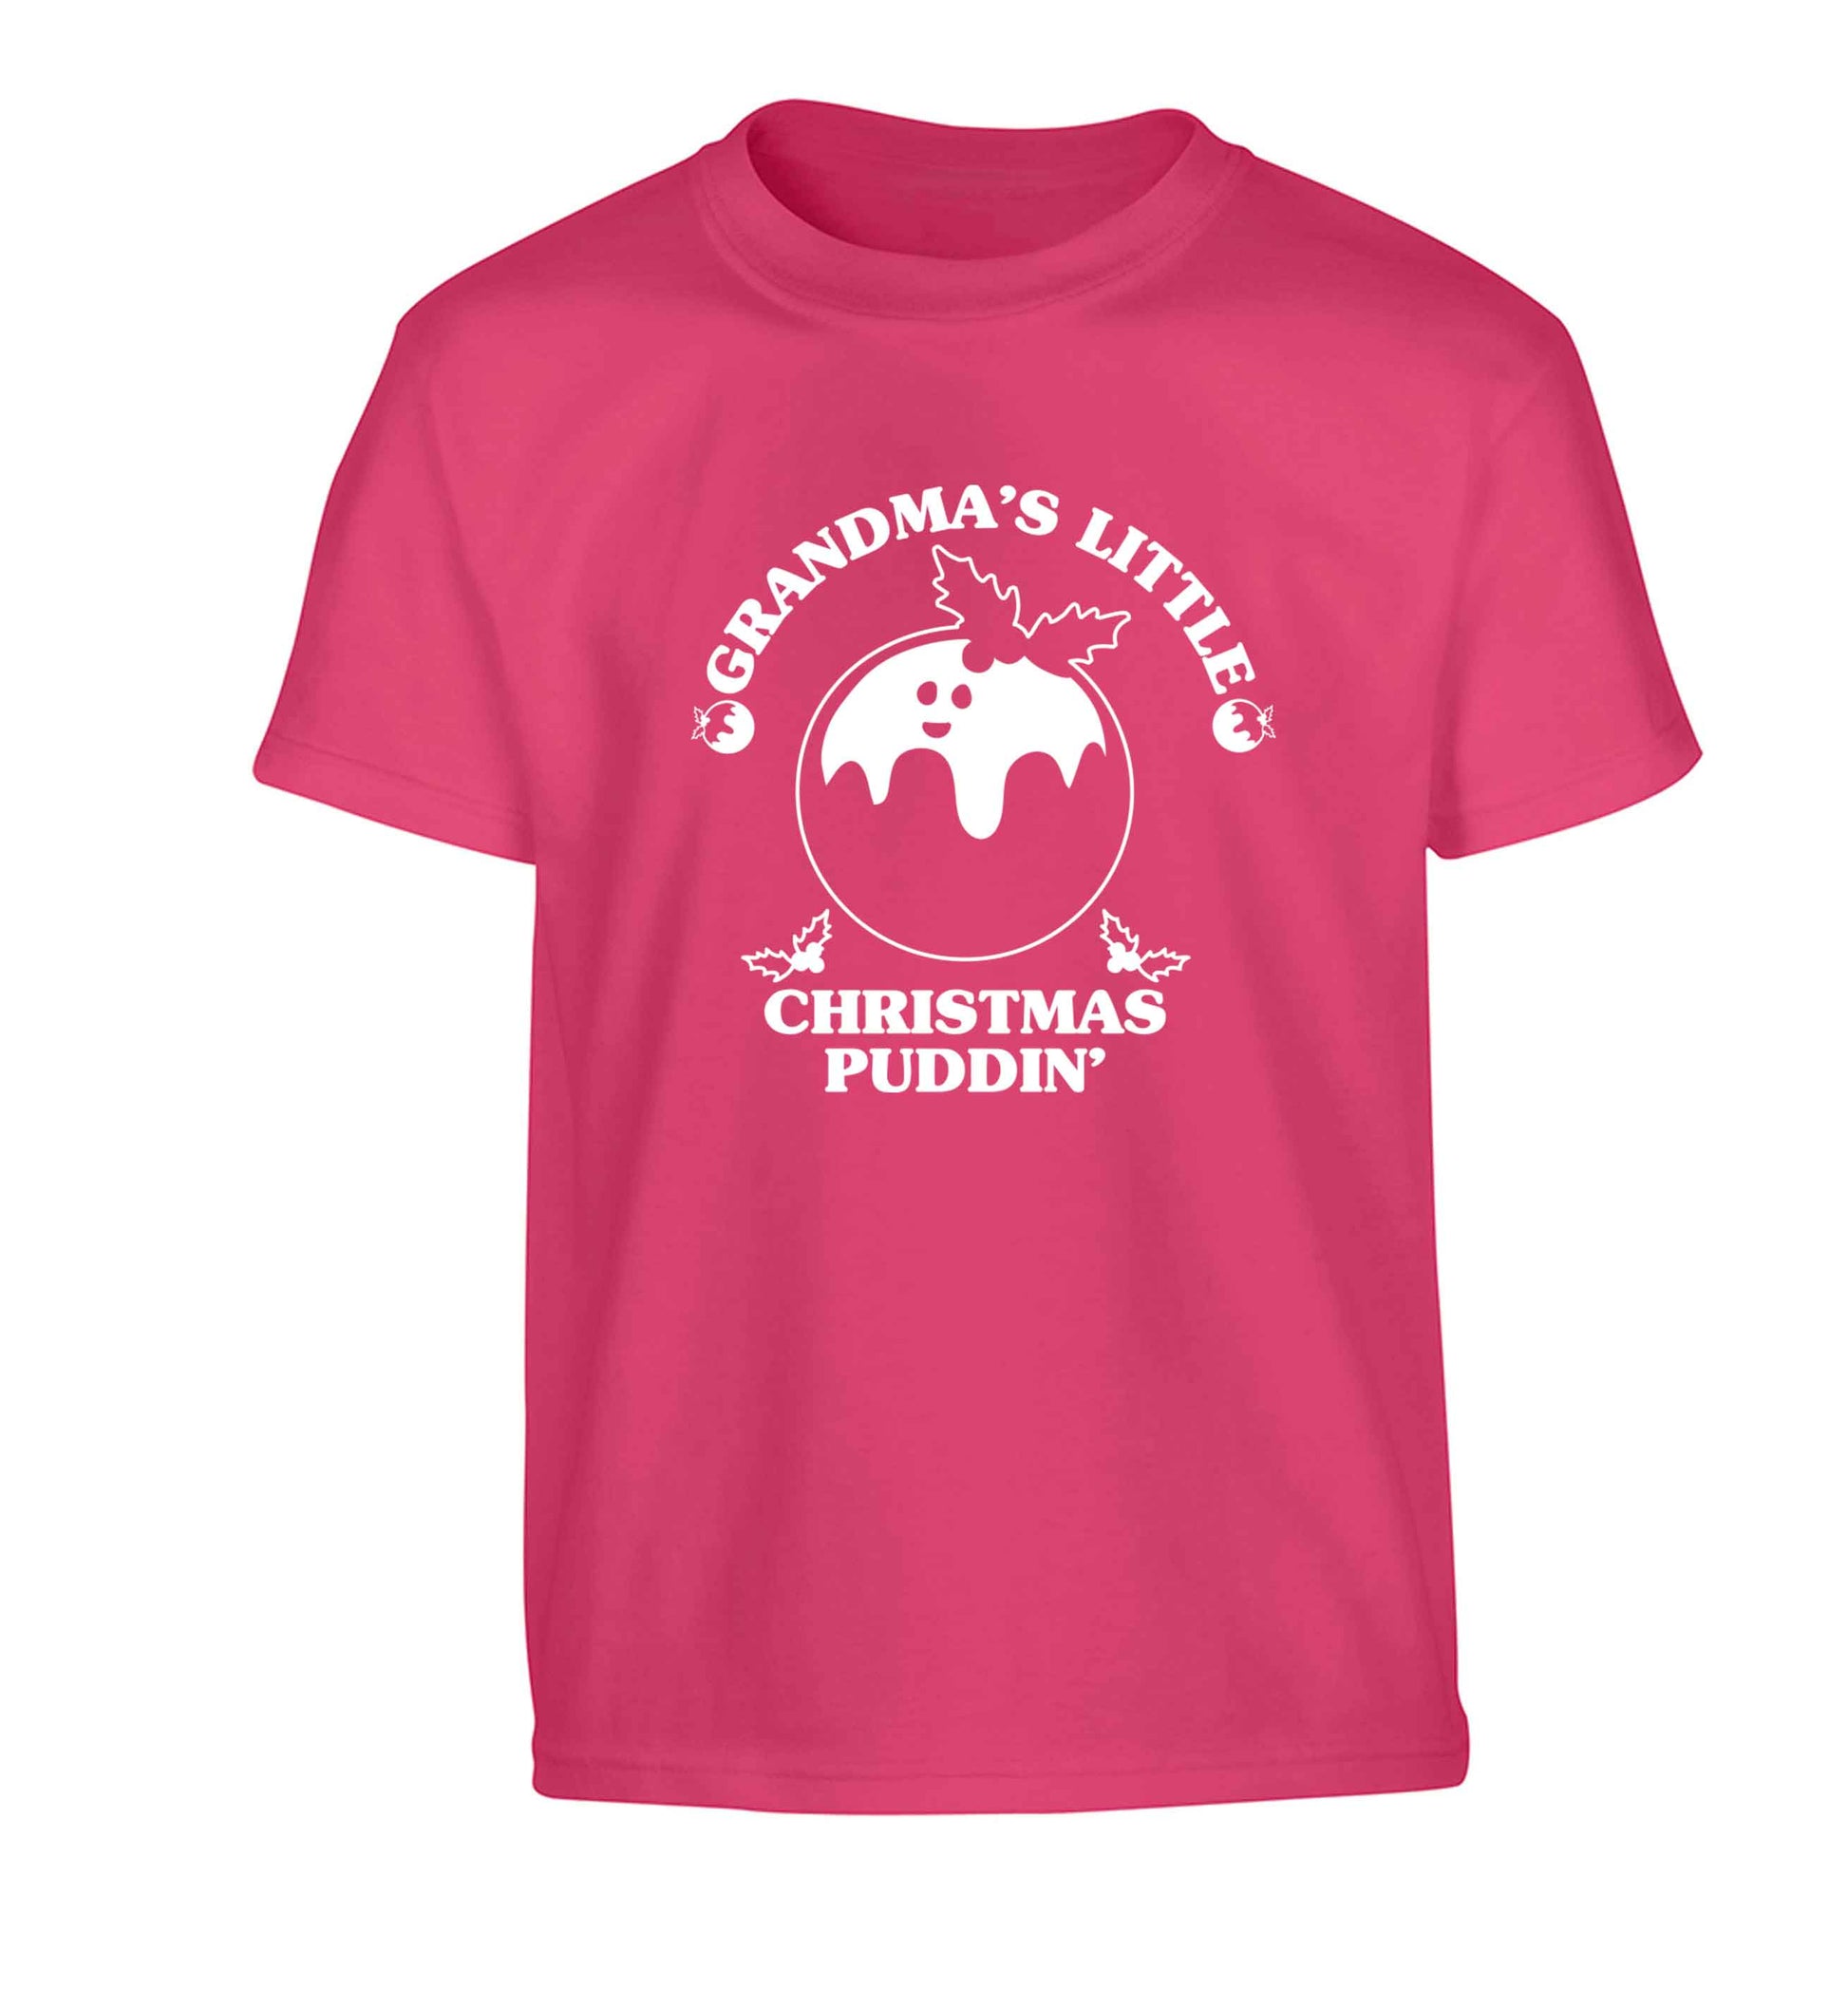 Grandma's little Christmas puddin' Children's pink Tshirt 12-13 Years